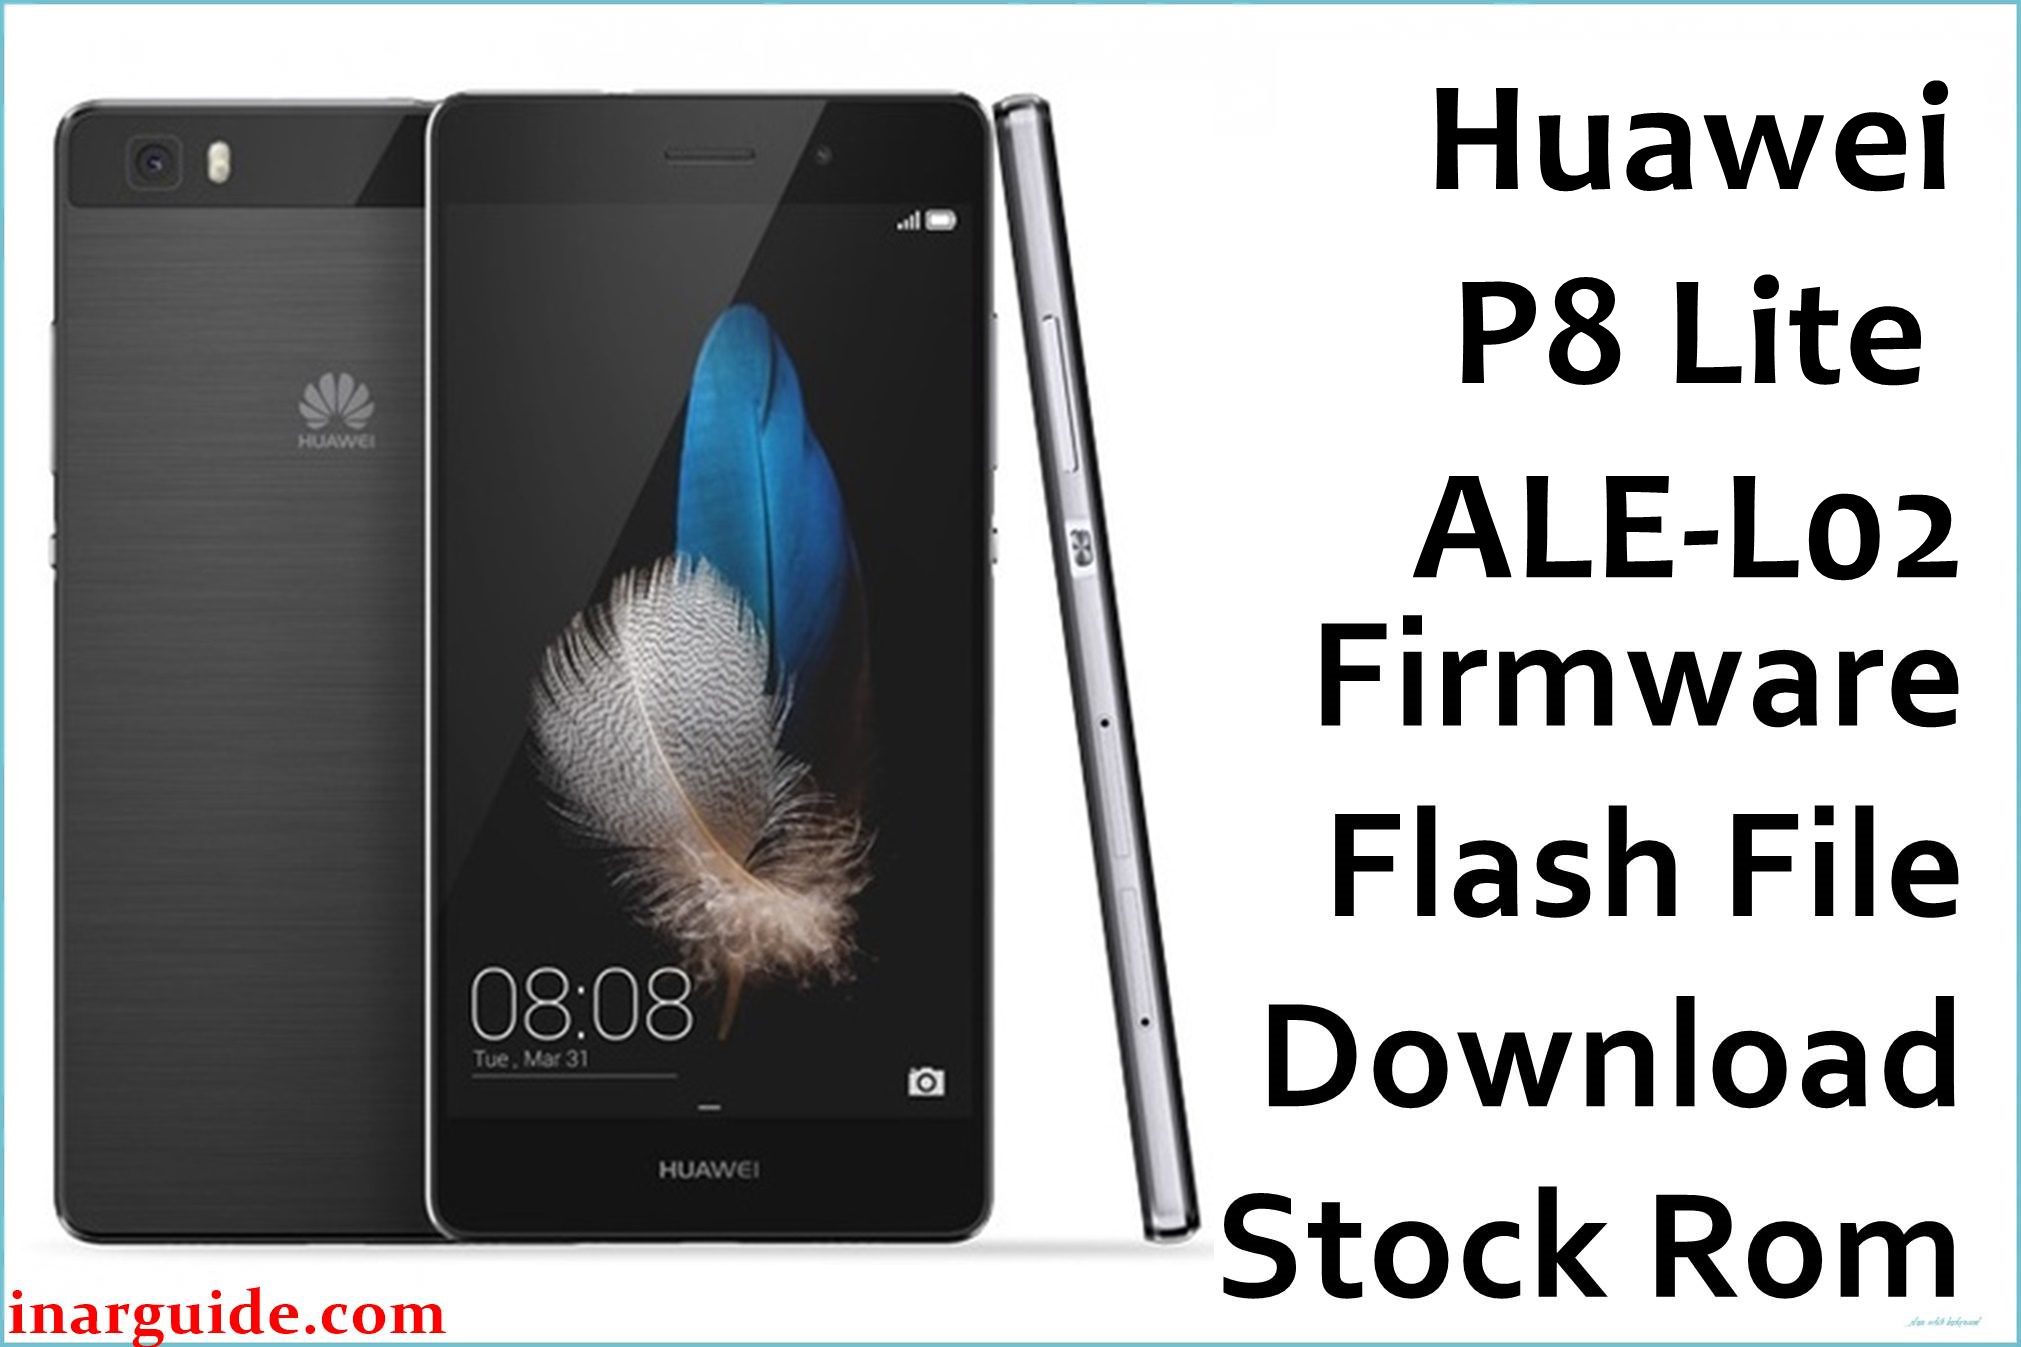 Huawei P8 Lite ALE L02